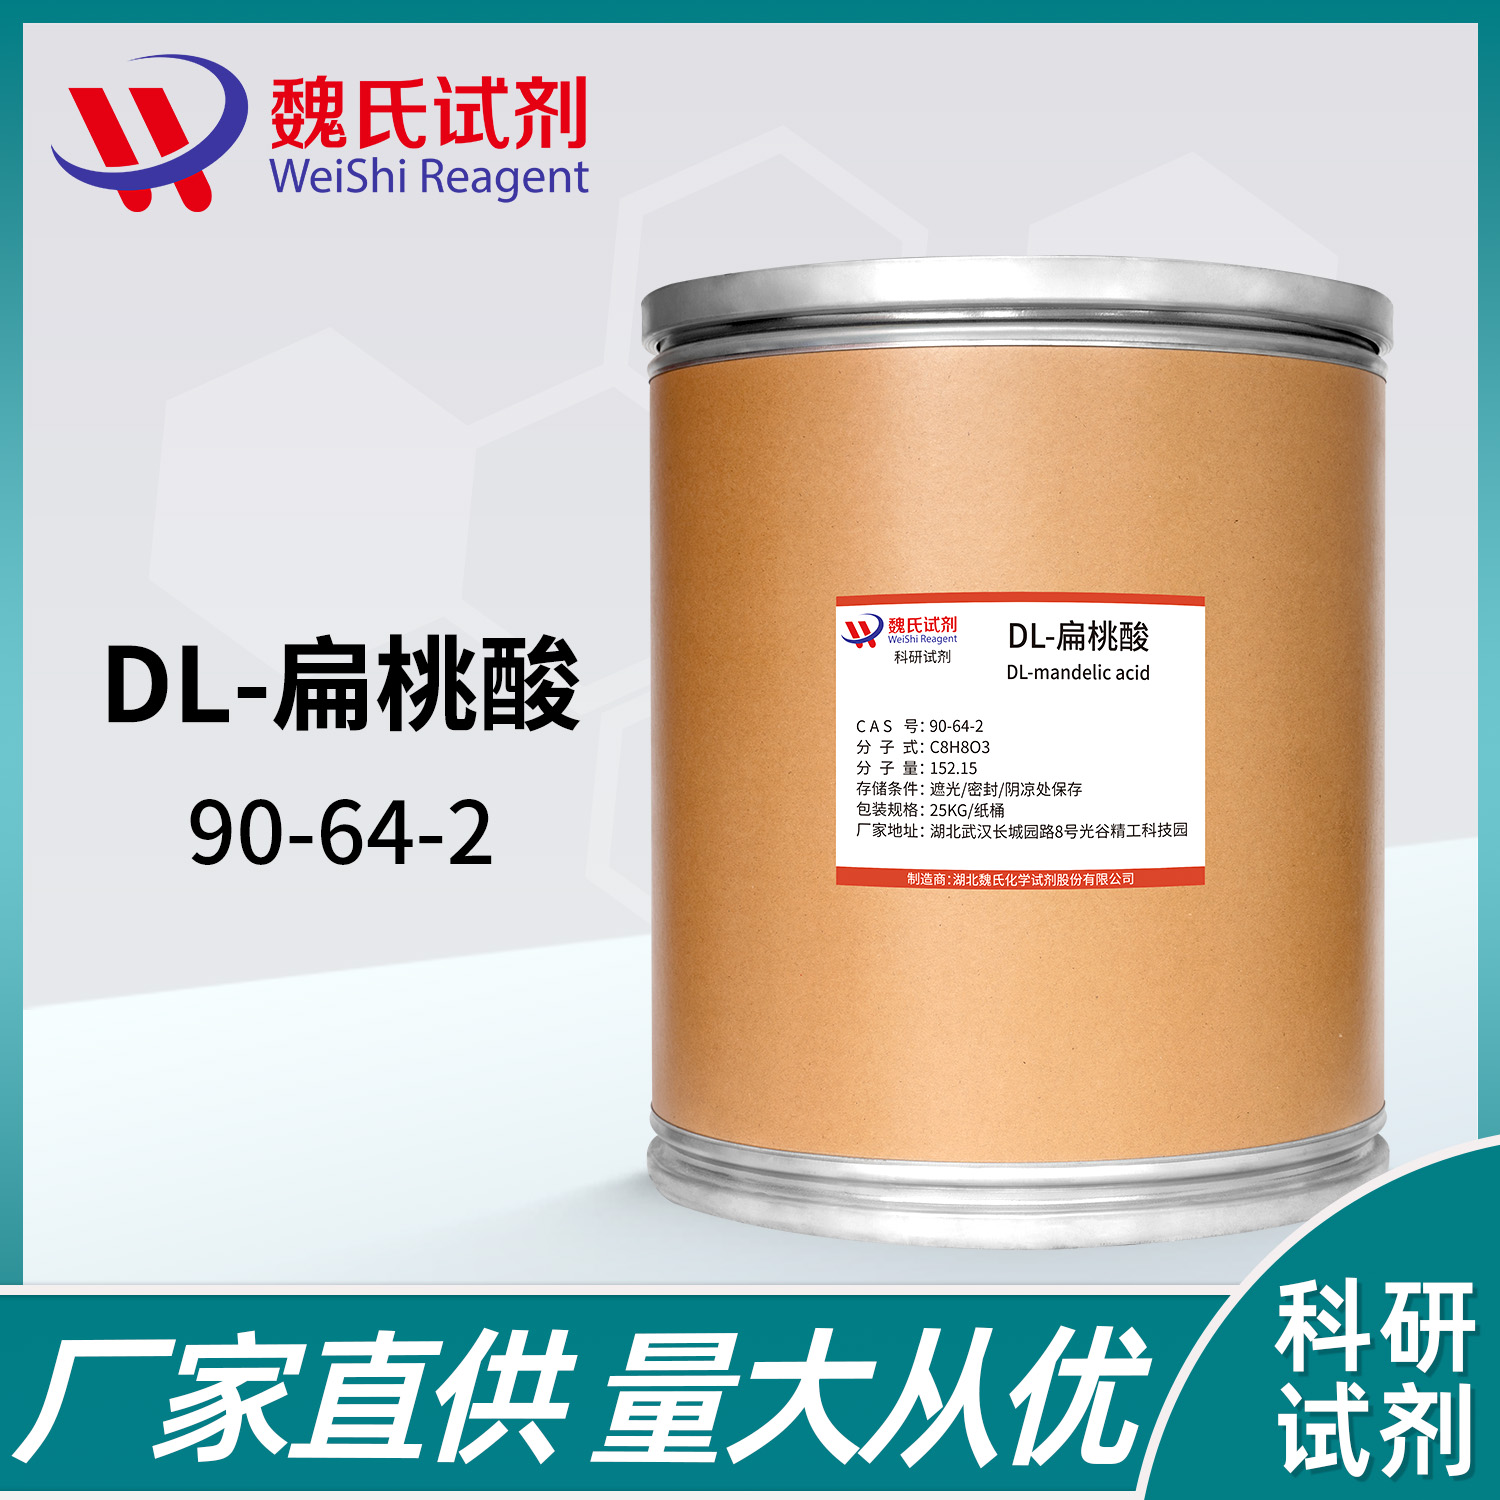 DL-扁桃酸；苦杏仁酸